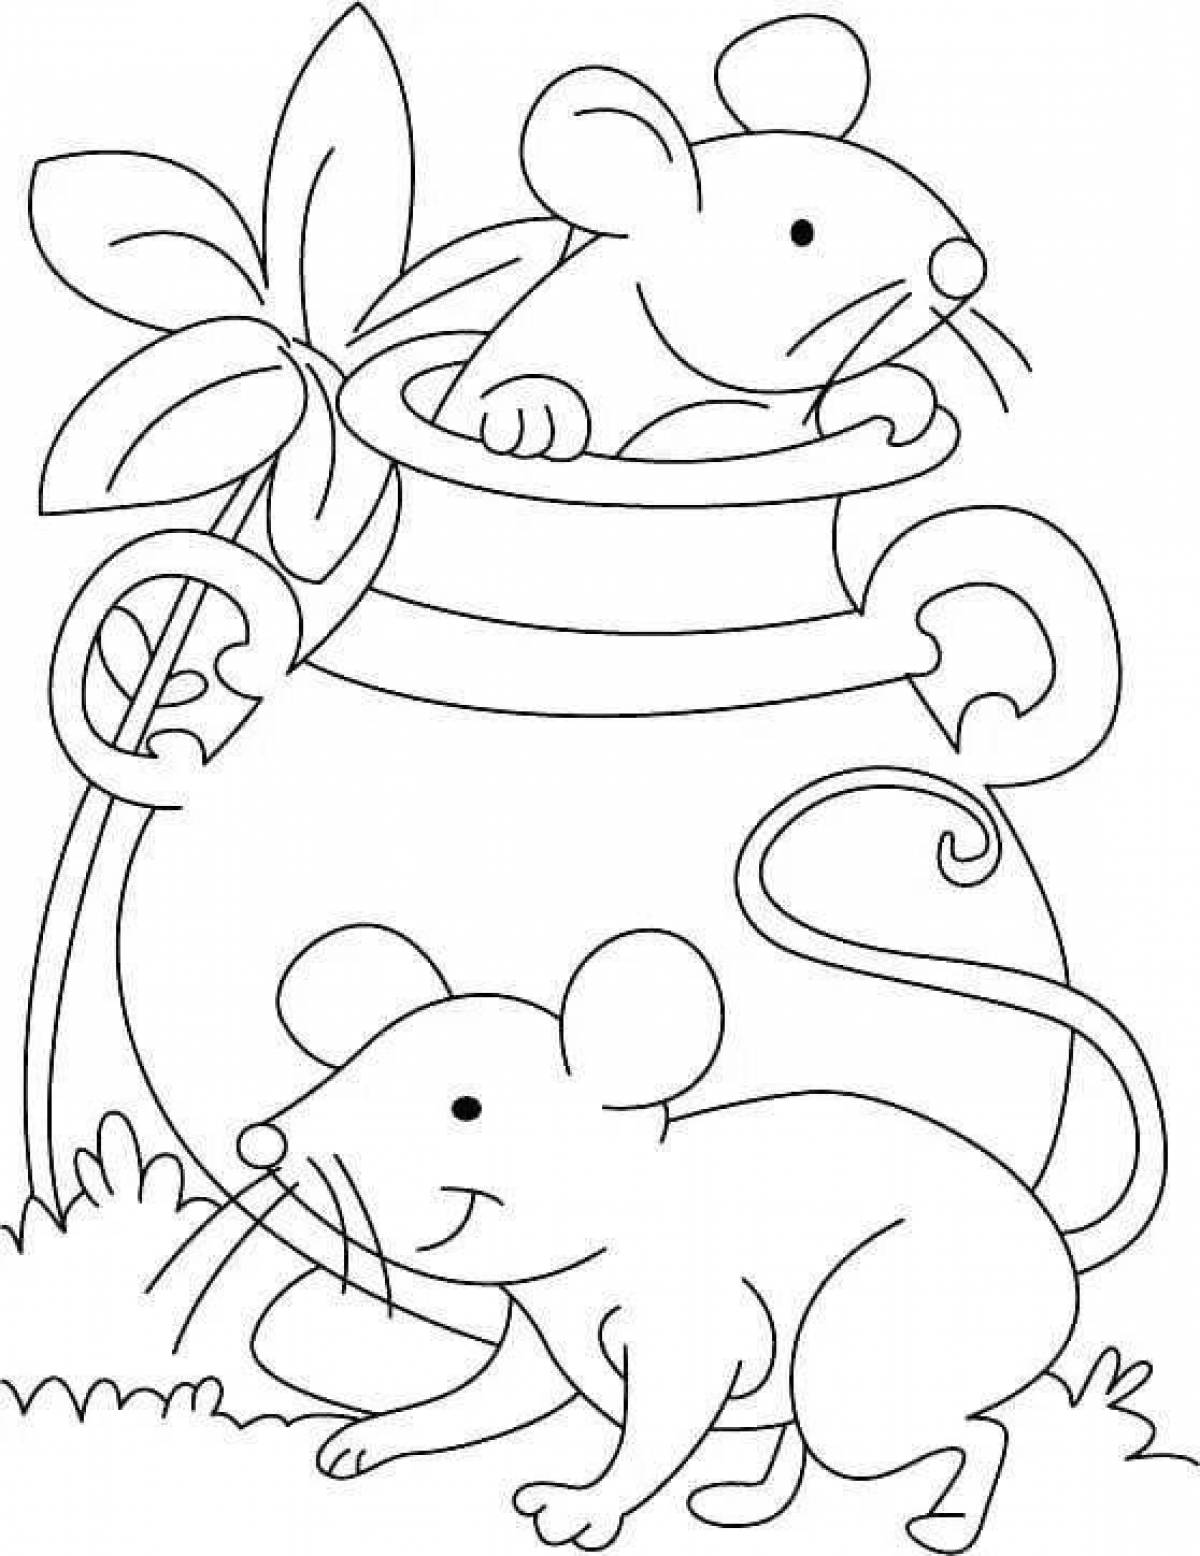 Сказочная мышь норушка раскраска